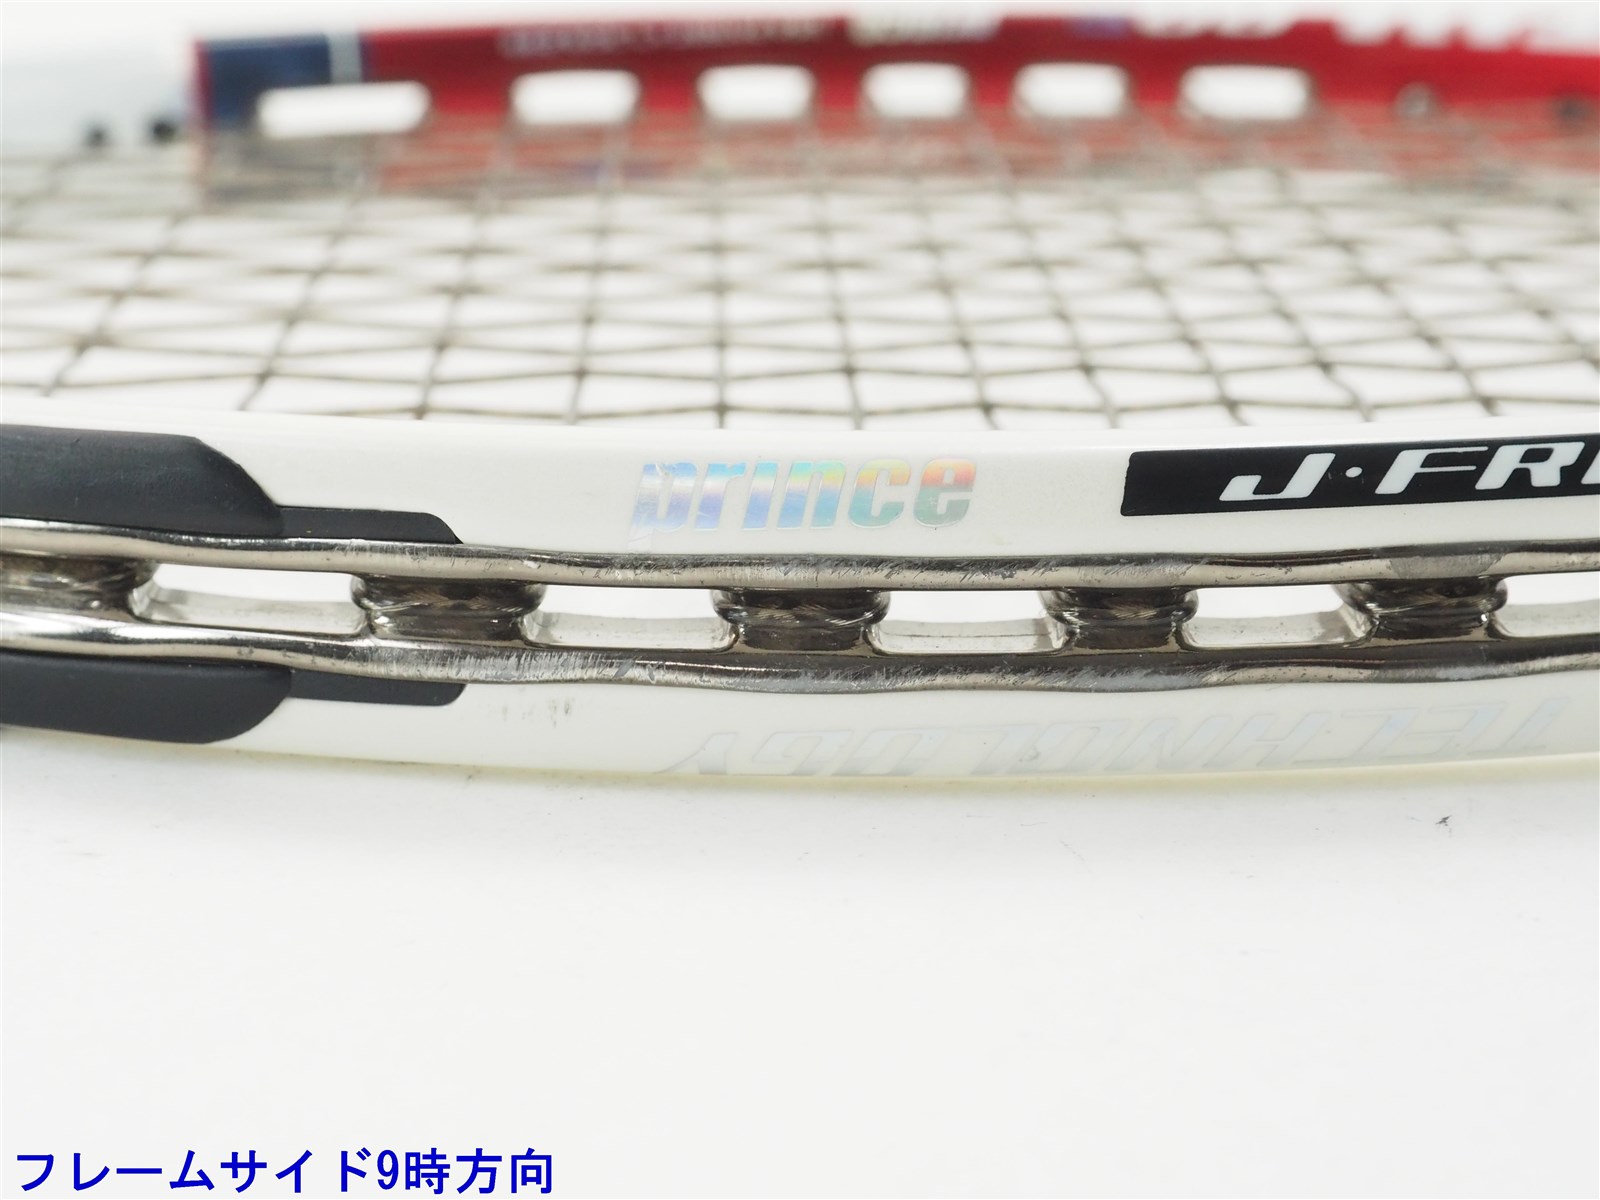 テニスラケット プリンス イーエックスオースリー シャーク 98T 2013年モデル (G2)PRINCE EXO3 SHARK 98T 2013元グリップ交換済み付属品